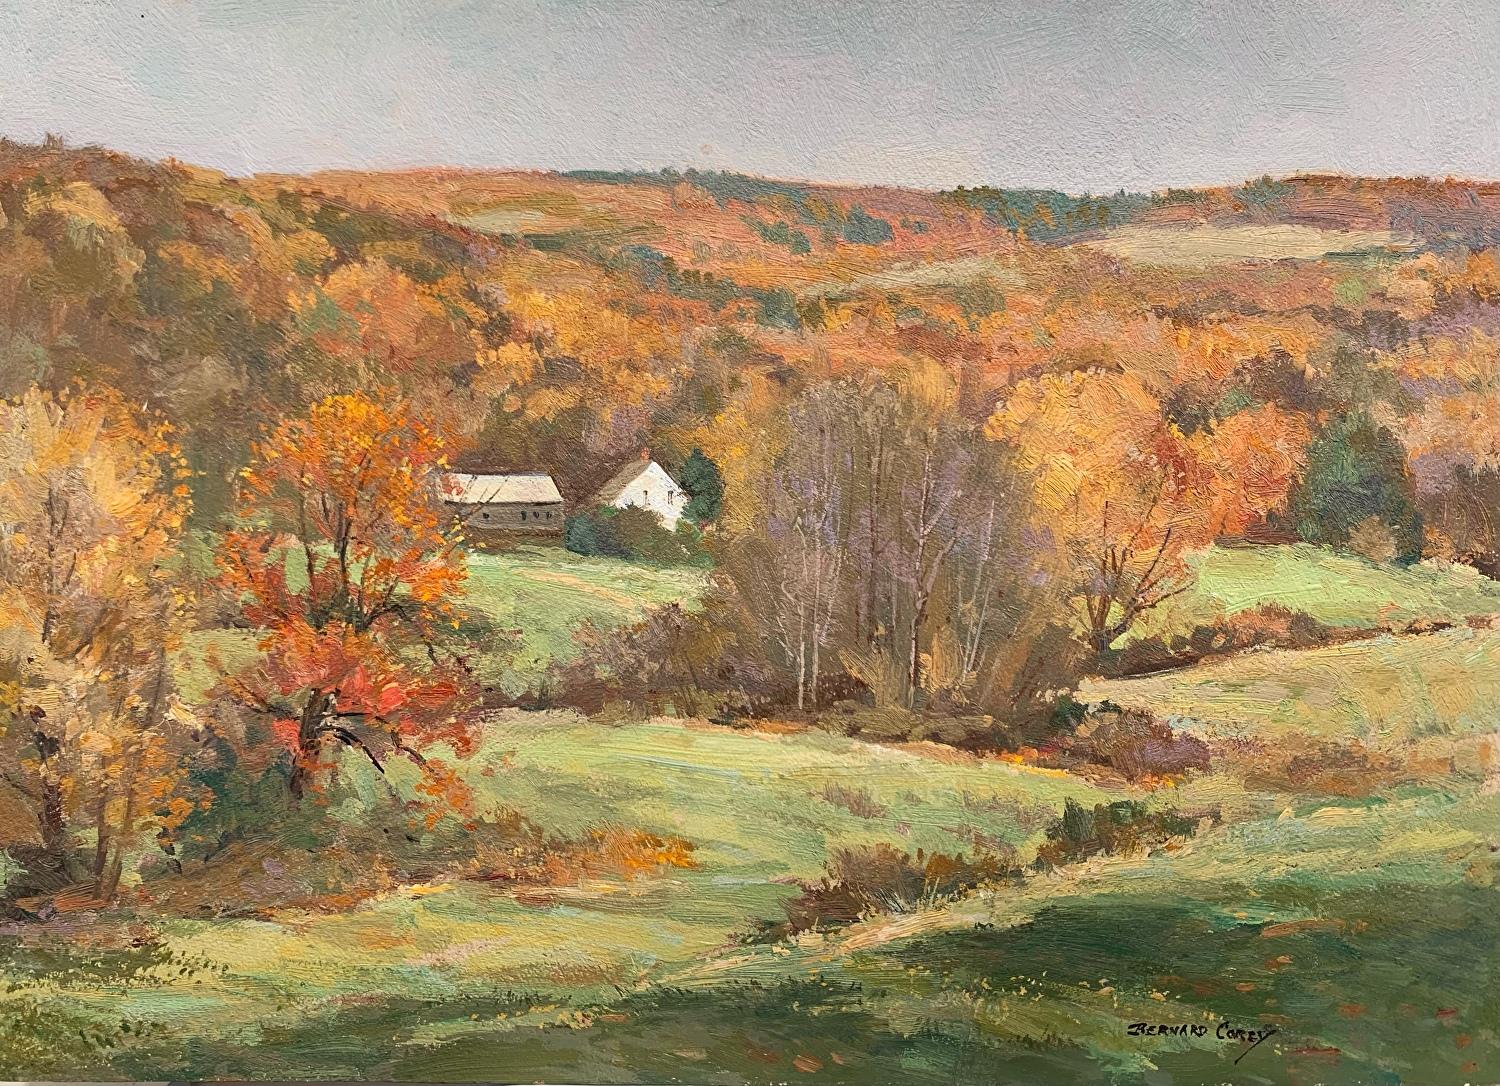 Bernard Corey était un artiste renommé de Grafton, dans le Massachusetts, connu pour ses peintures et gravures capturant la beauté de la Nouvelle-Angleterre. Ses œuvres témoignent d'une maîtrise de la lumière, de la couleur et de la composition,